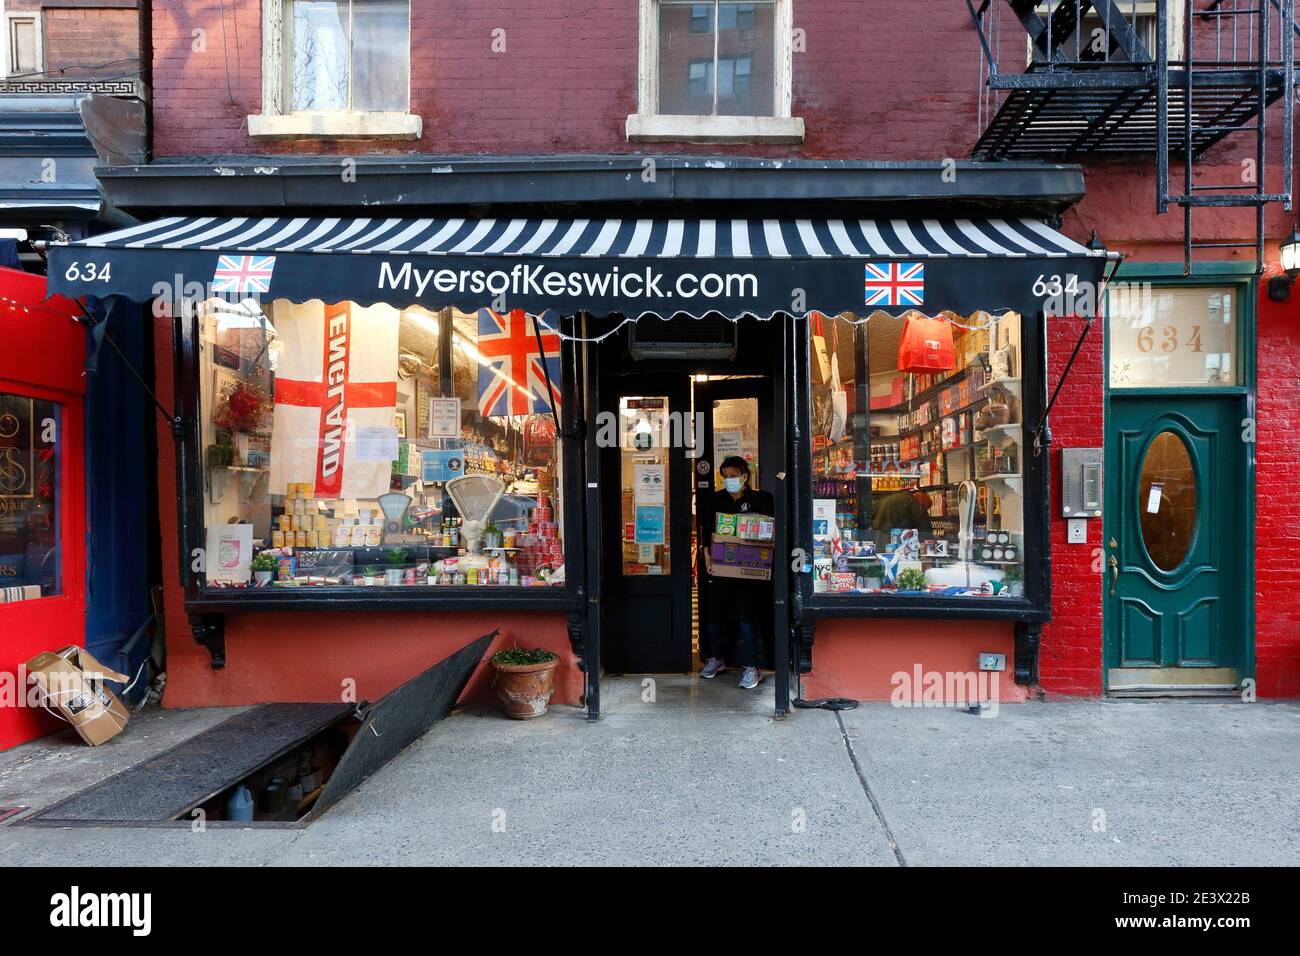 Myers of Keswick, 634 Hudson St, New York, NYC Foto von einem Lebensmittelgeschäft, das sich auf britische Spezialitäten im West Village spezialisiert hat. Stockfoto